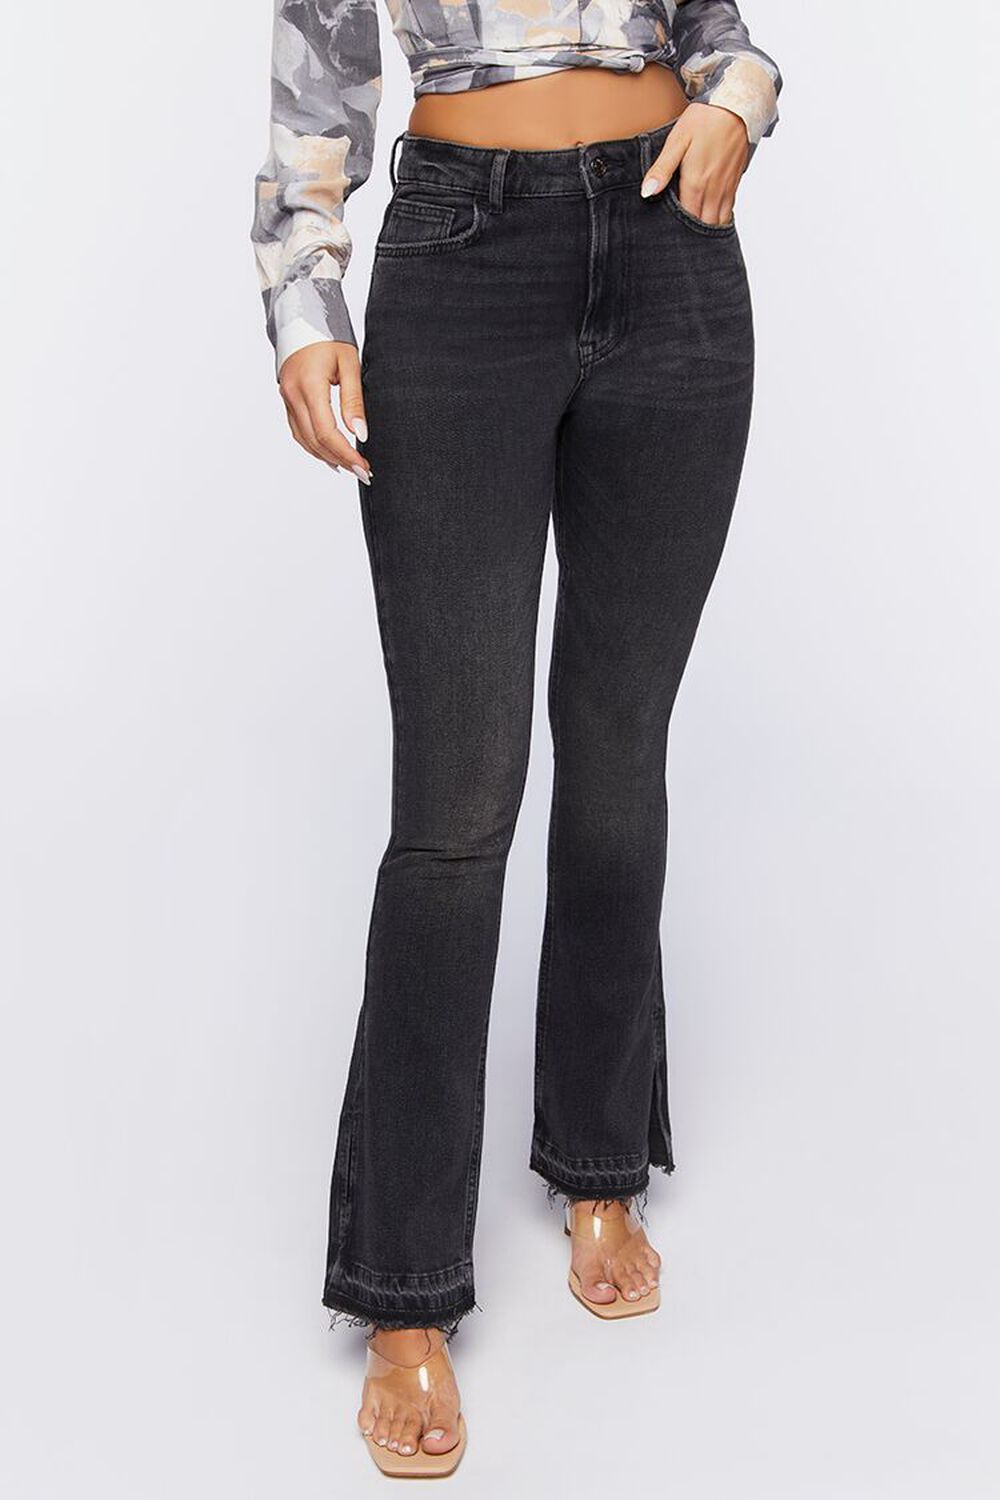 Forever 21 Women's High-Rise Split Flare Jeans